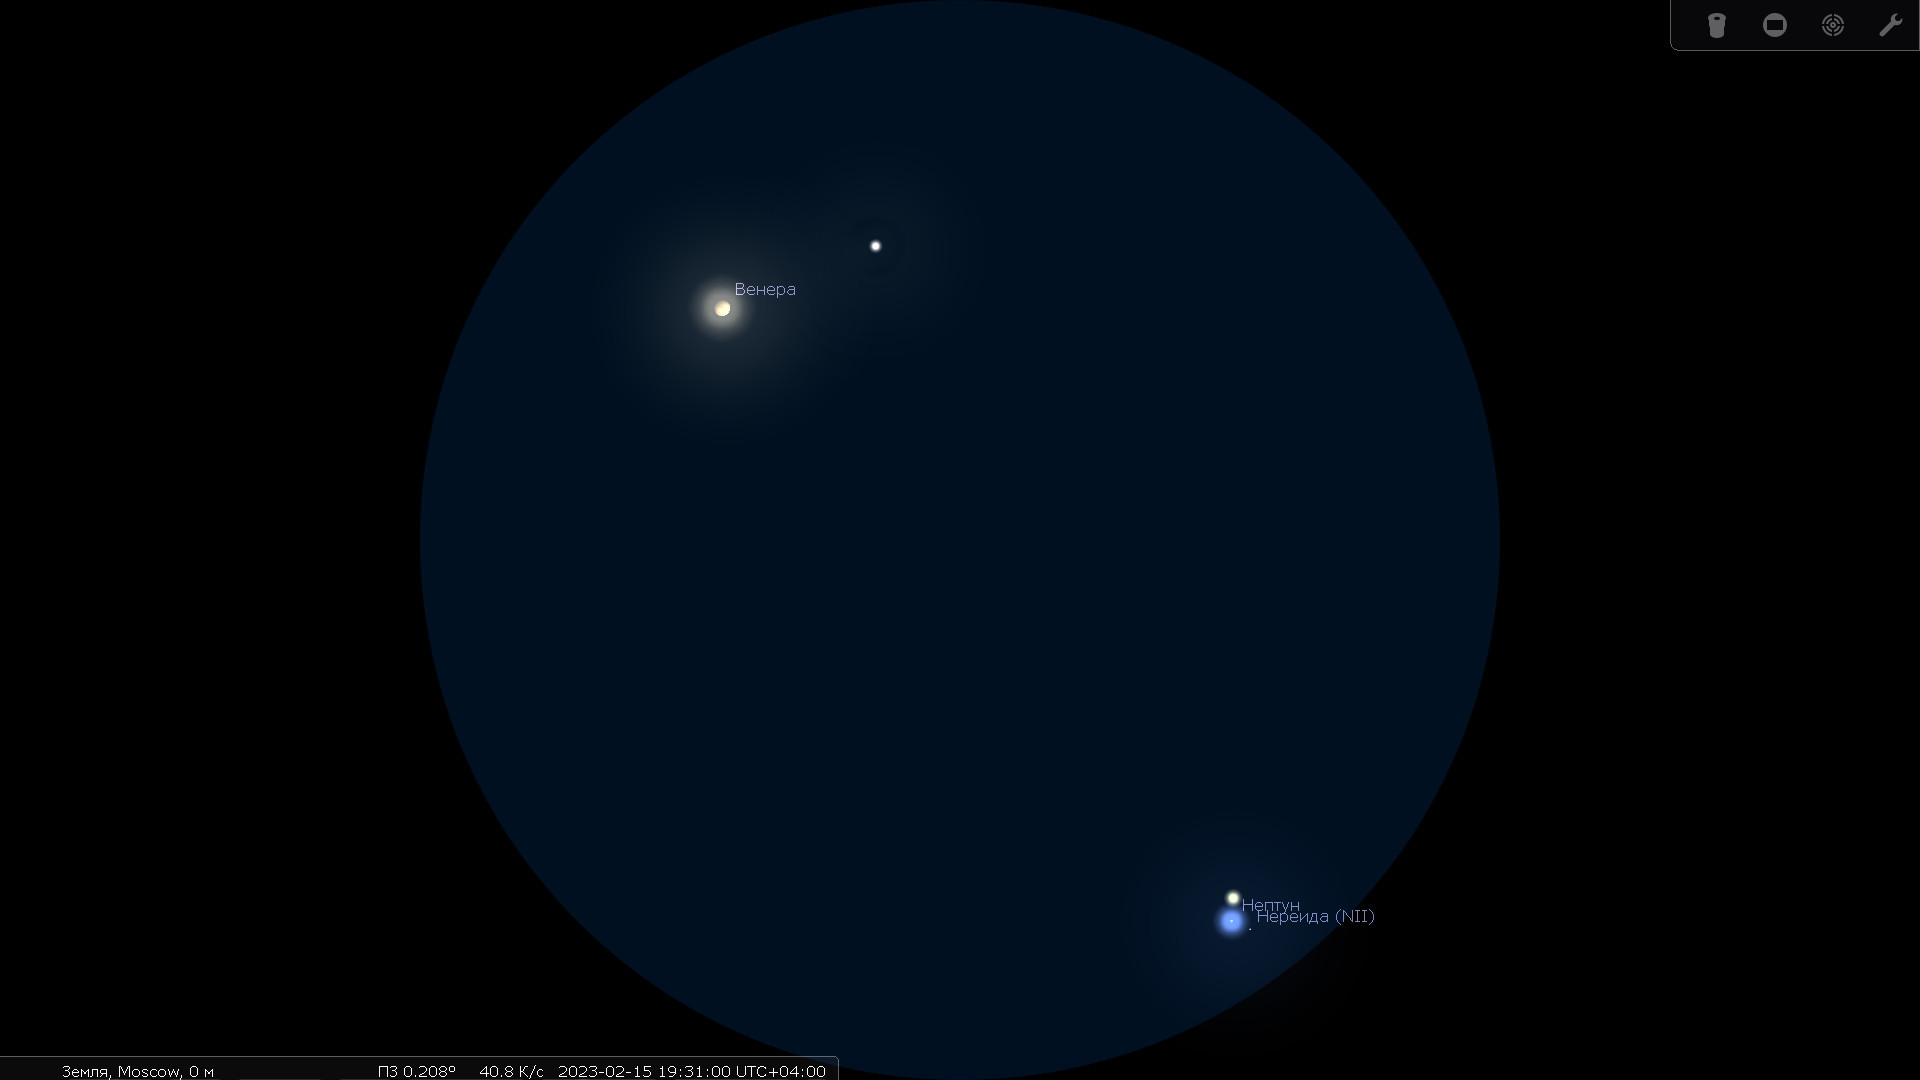 Венера, планета Нептун и&nbsp;его спутники 15 февраля 2023&nbsp;года при&nbsp;наблюдении в&nbsp;телескоп с&nbsp;большим увеличением. Характерная локация&nbsp;— Европа.